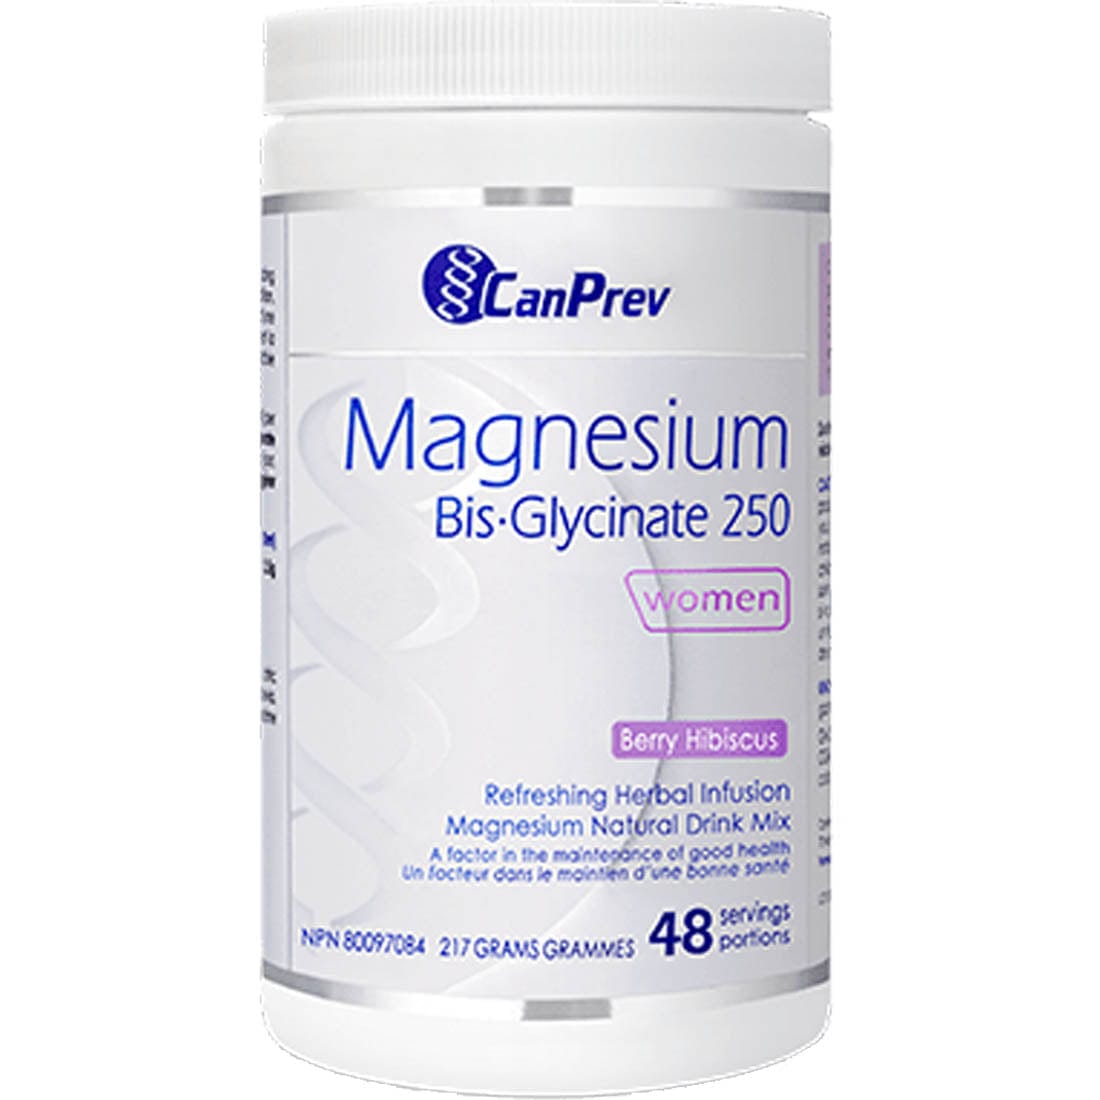 Magnesium Bis-Glycinate 250